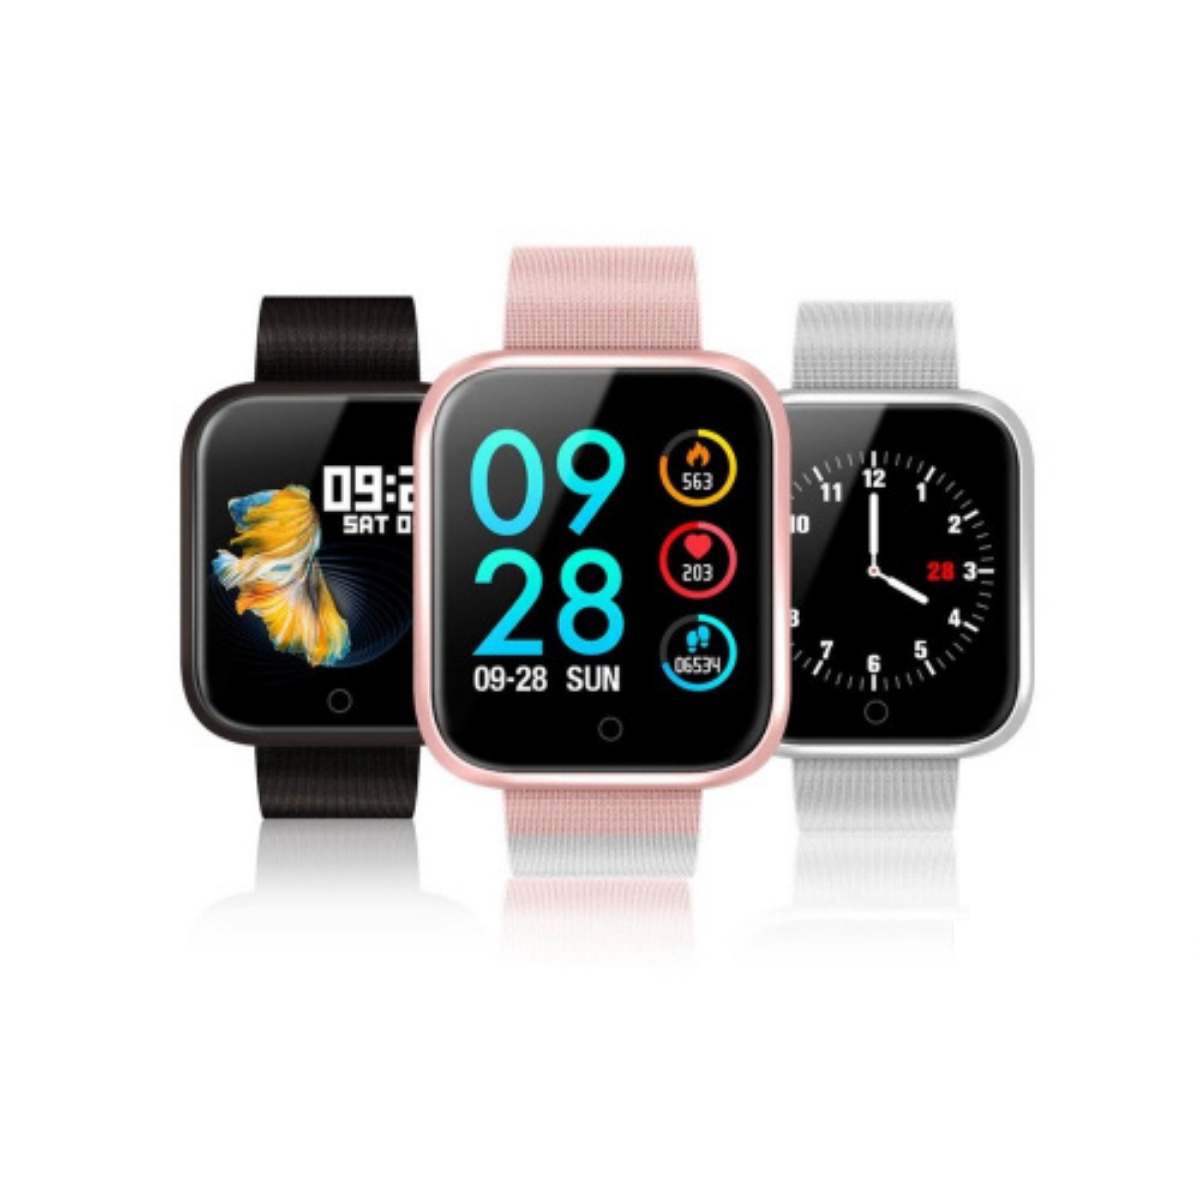 Smartwatch Relógio P70 Inteligente Mulher e Homem Android iOs